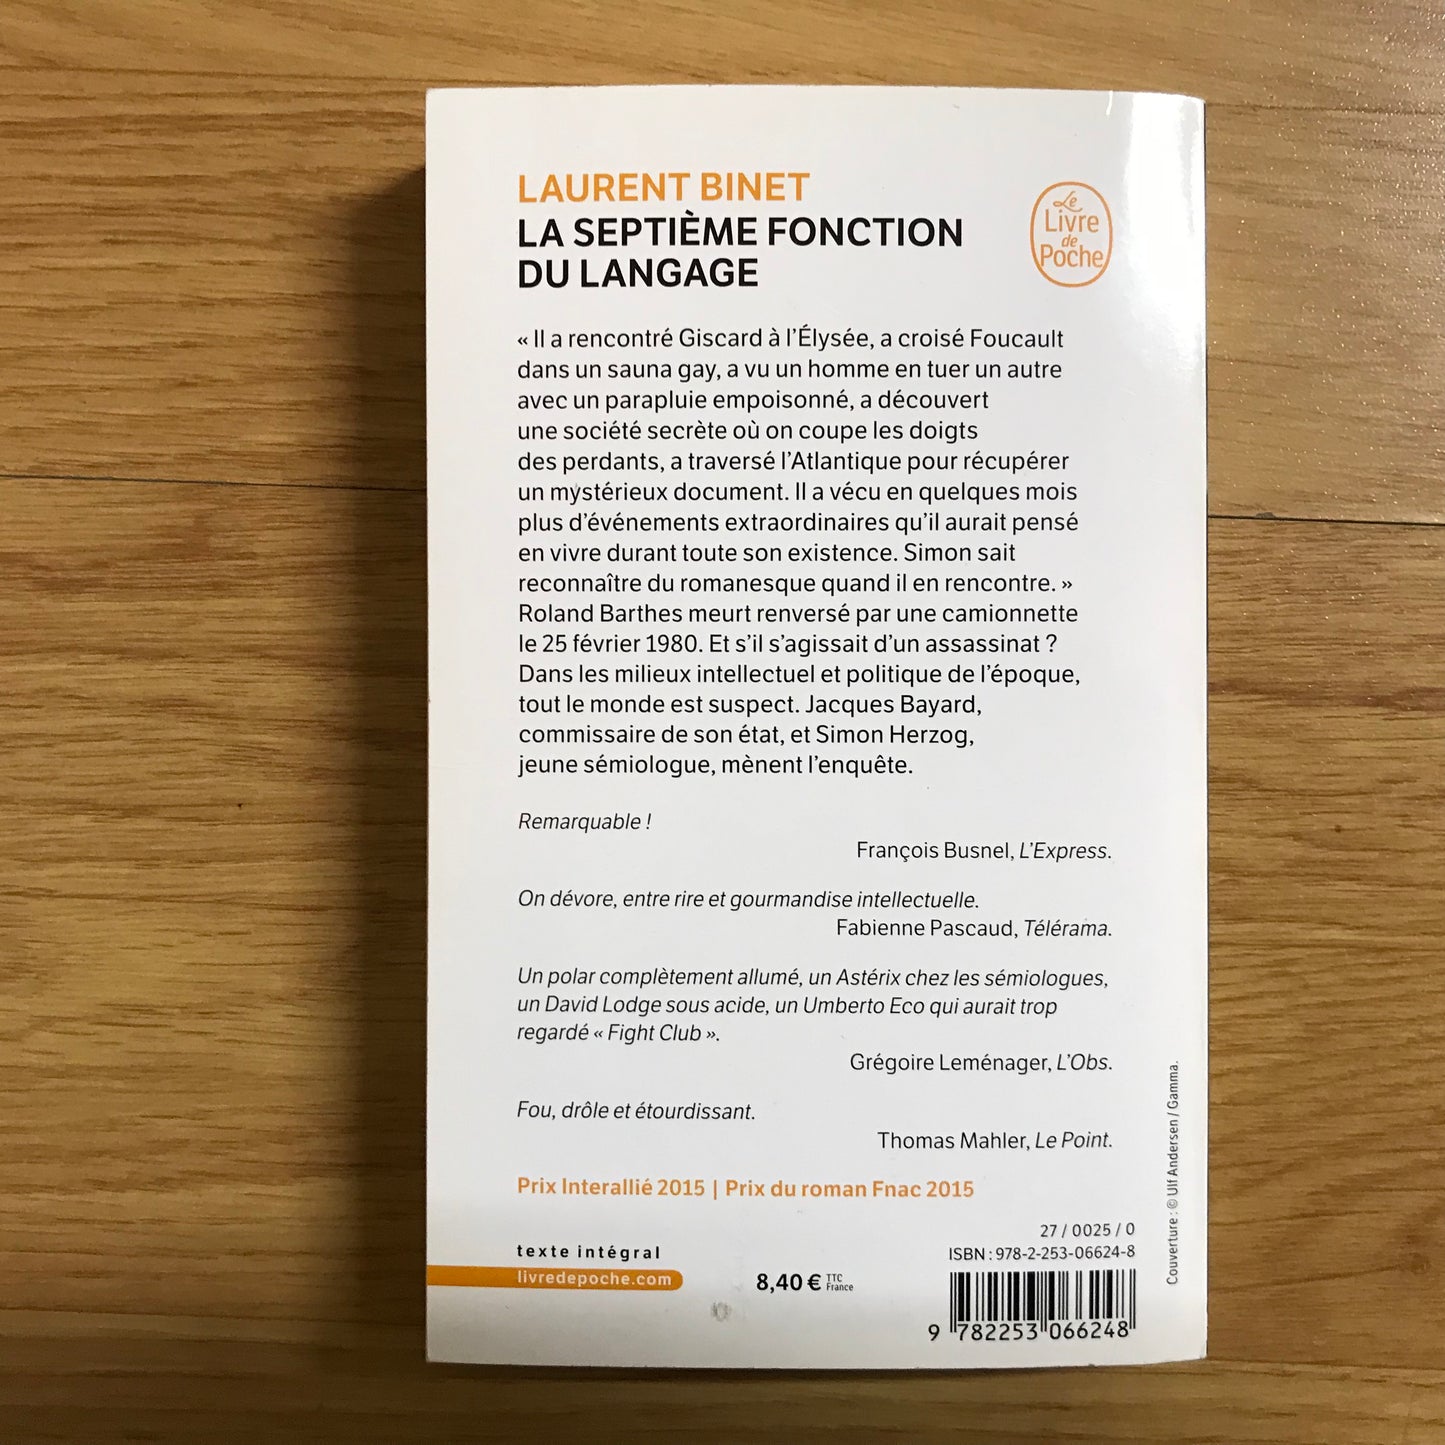 Binet, Laurent - La septième fonction du langage